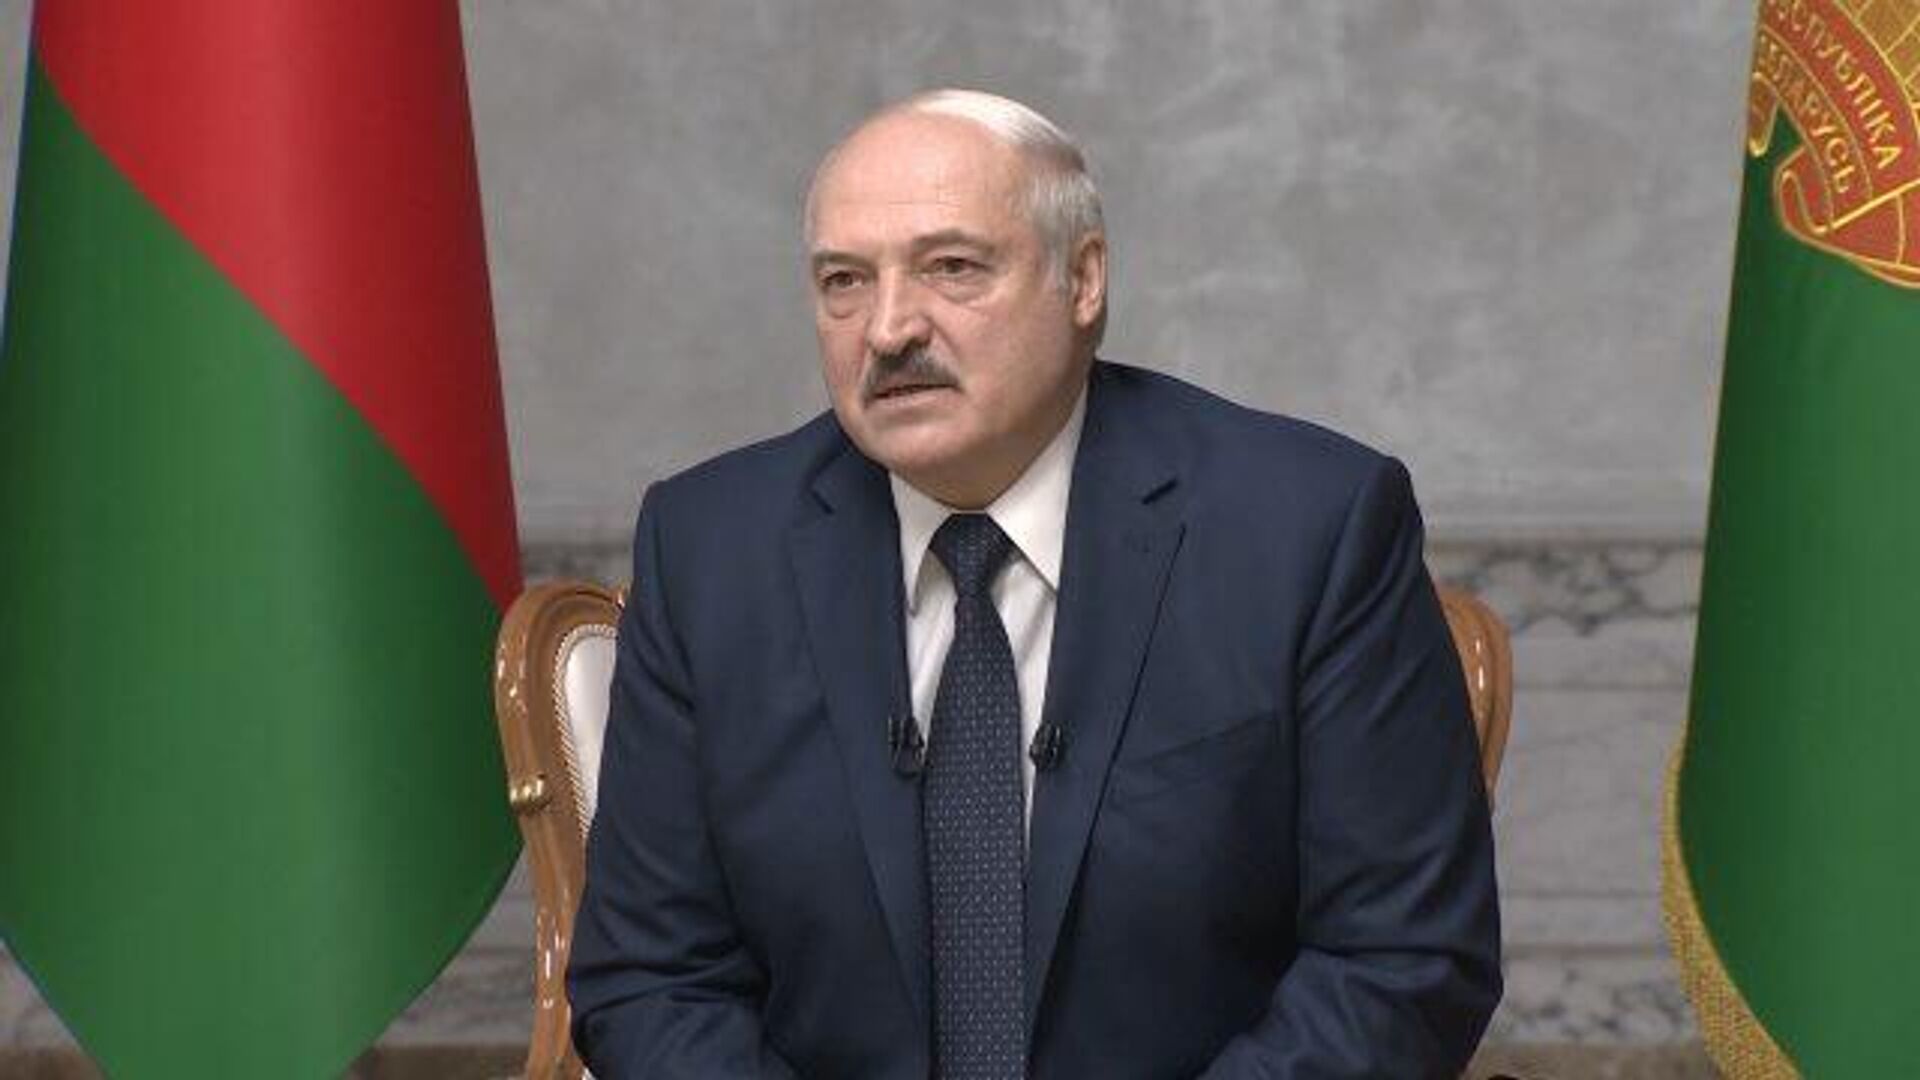 Следующая будет Россия – Лукашенко предположил, что произойдет, если рухнет Белоруссия - РИА Новости, 1920, 08.09.2020